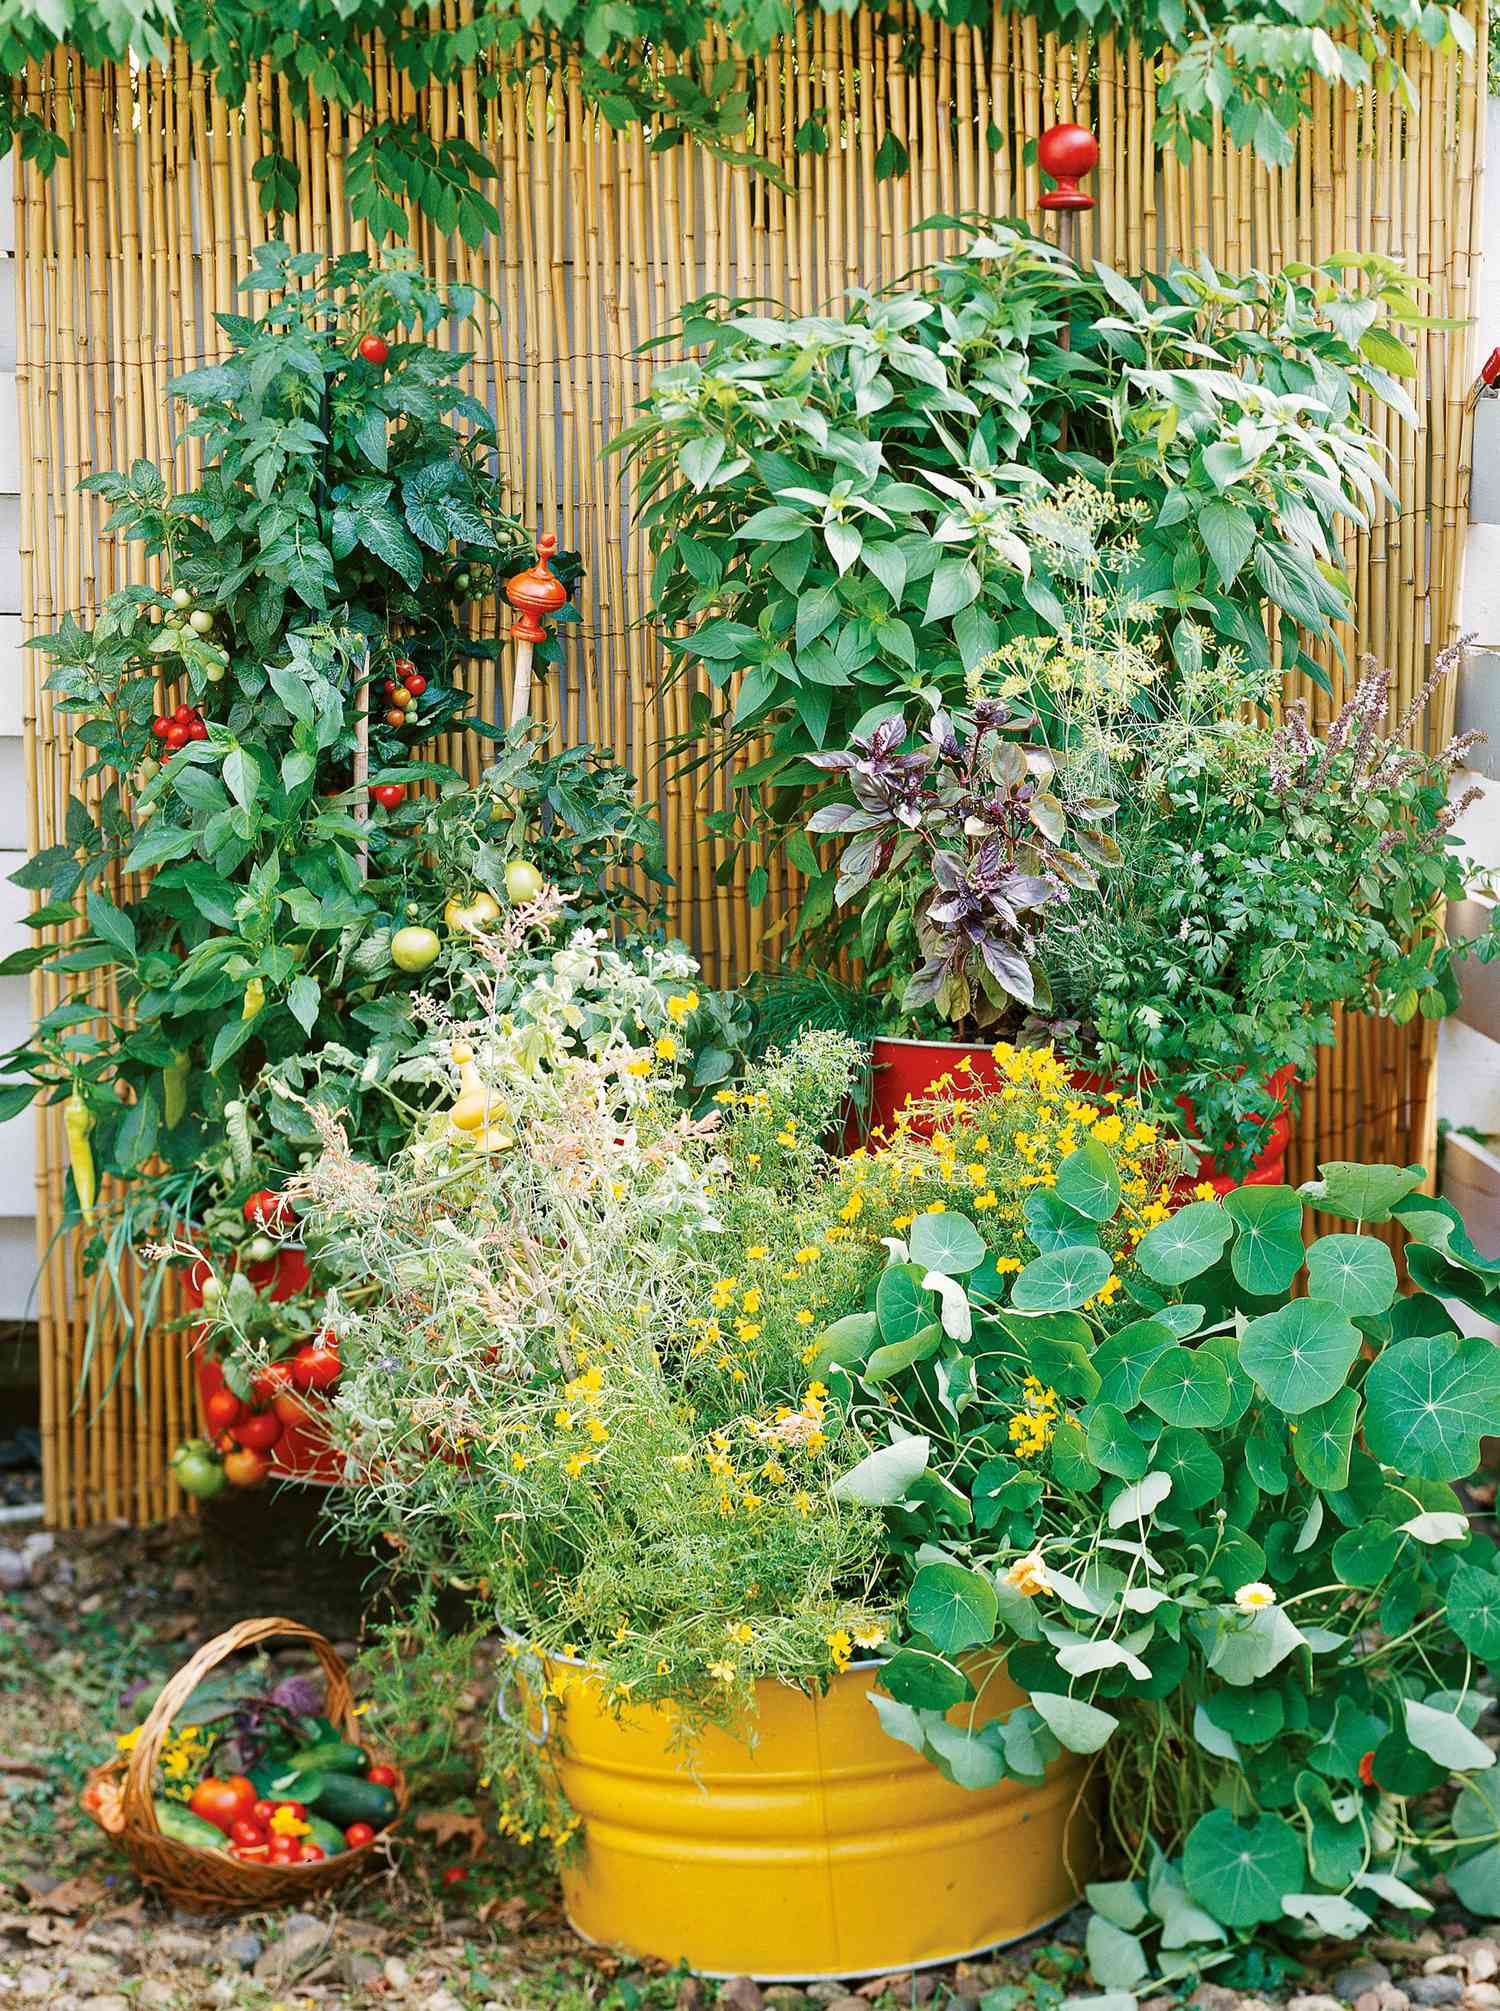 How to Start a Beginner Vegetable Garden from Scratch ...